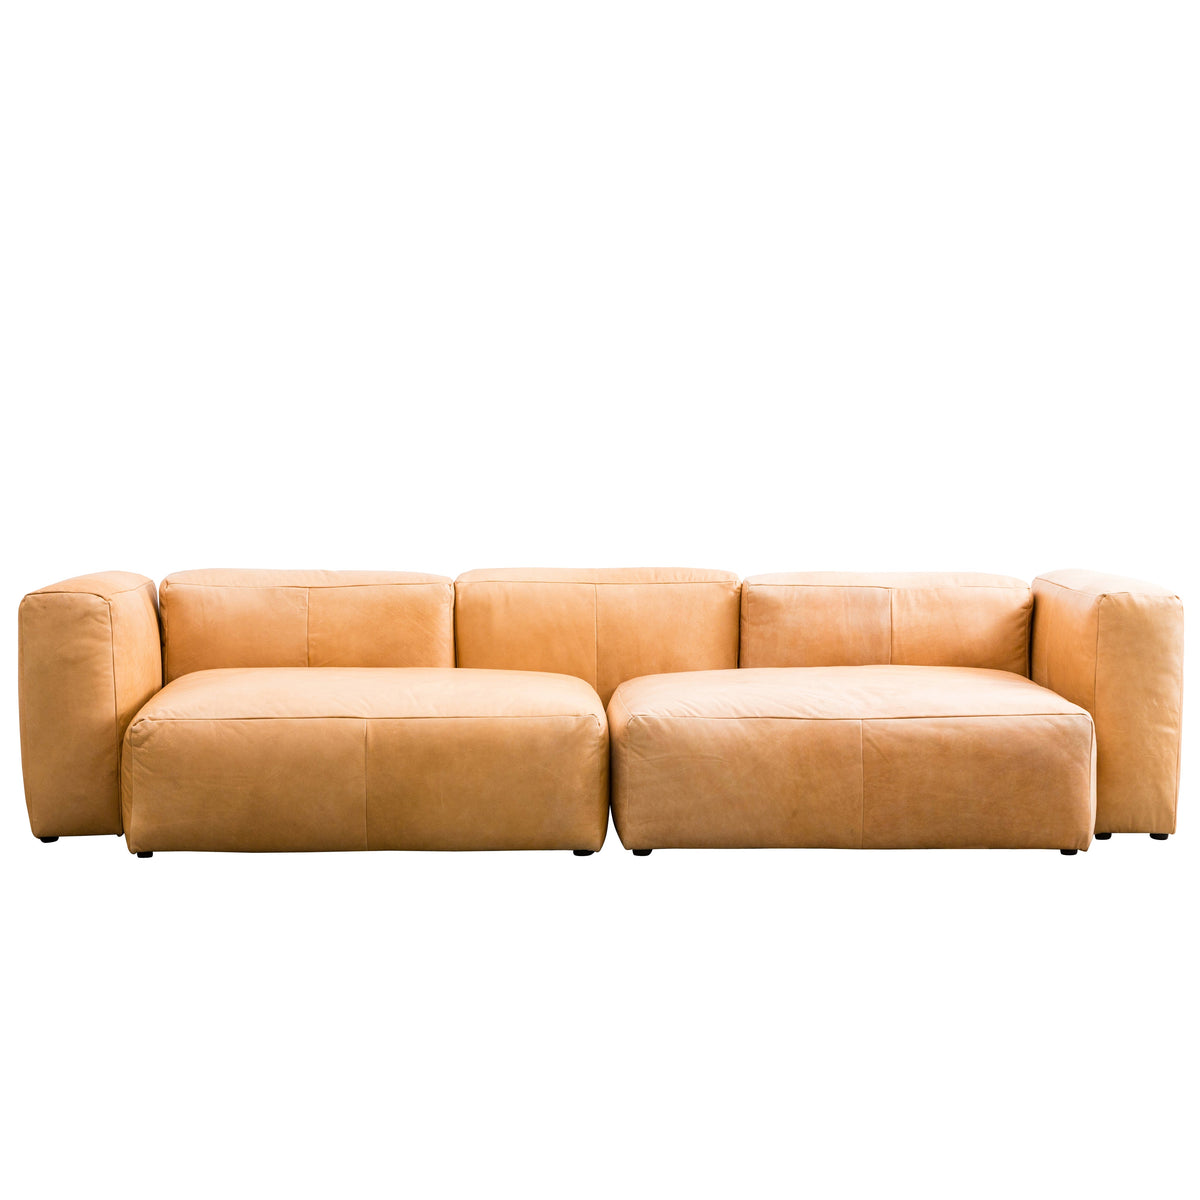 Tot tweede mild Luxe Lederen Lounge Sofa - Wilson - 4-zits Sofa - Cognac - Kort — Furnified